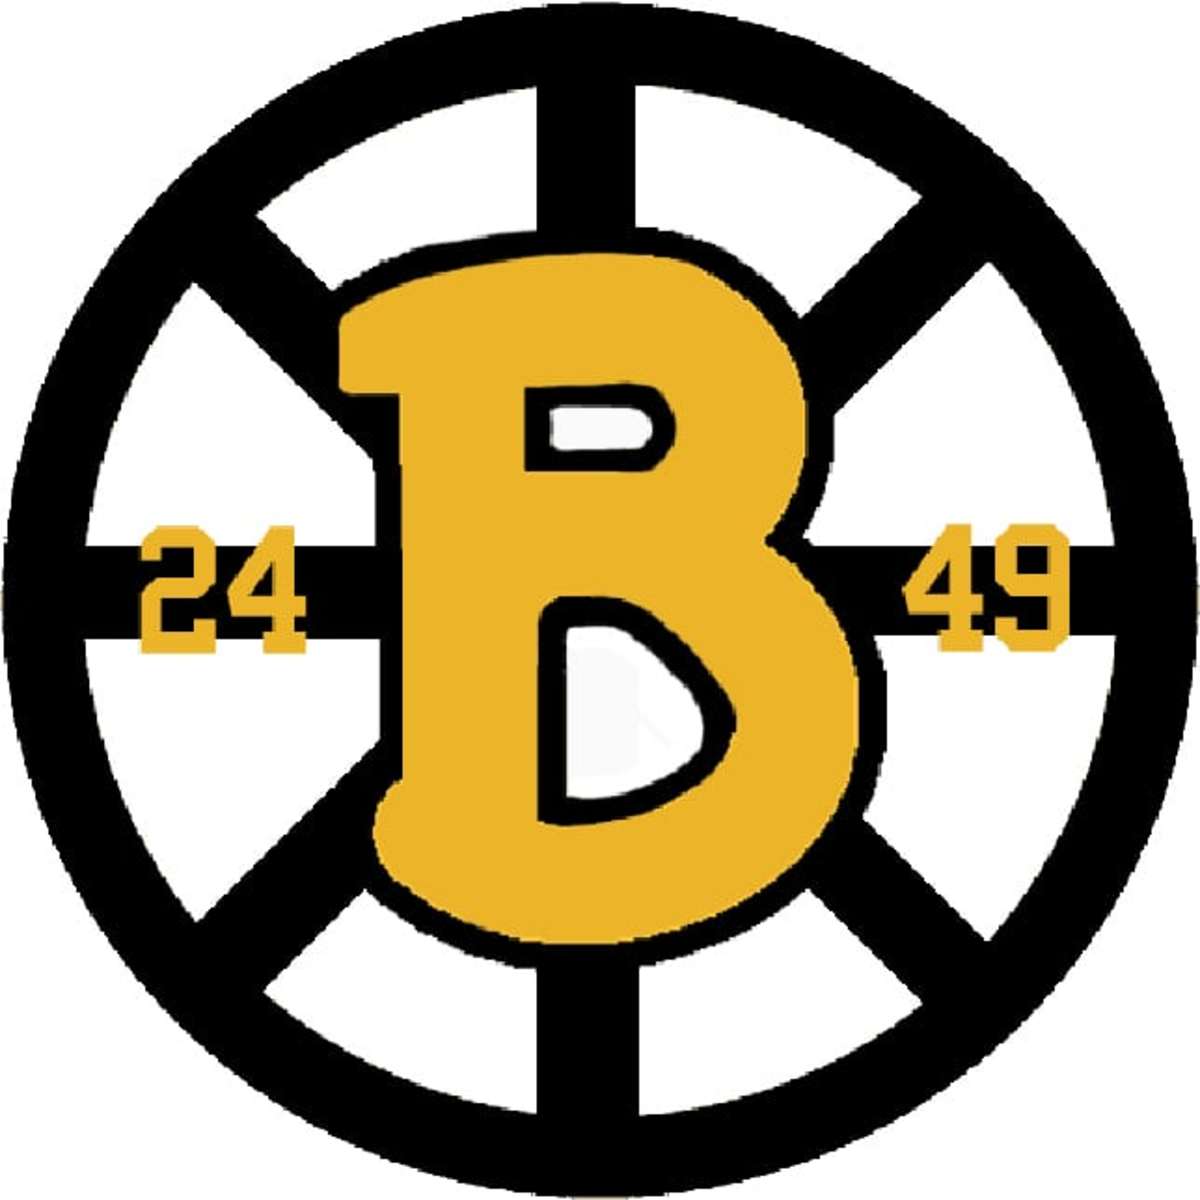 nhl-logo-rankings-no-7-boston-bruins-thehockeynews